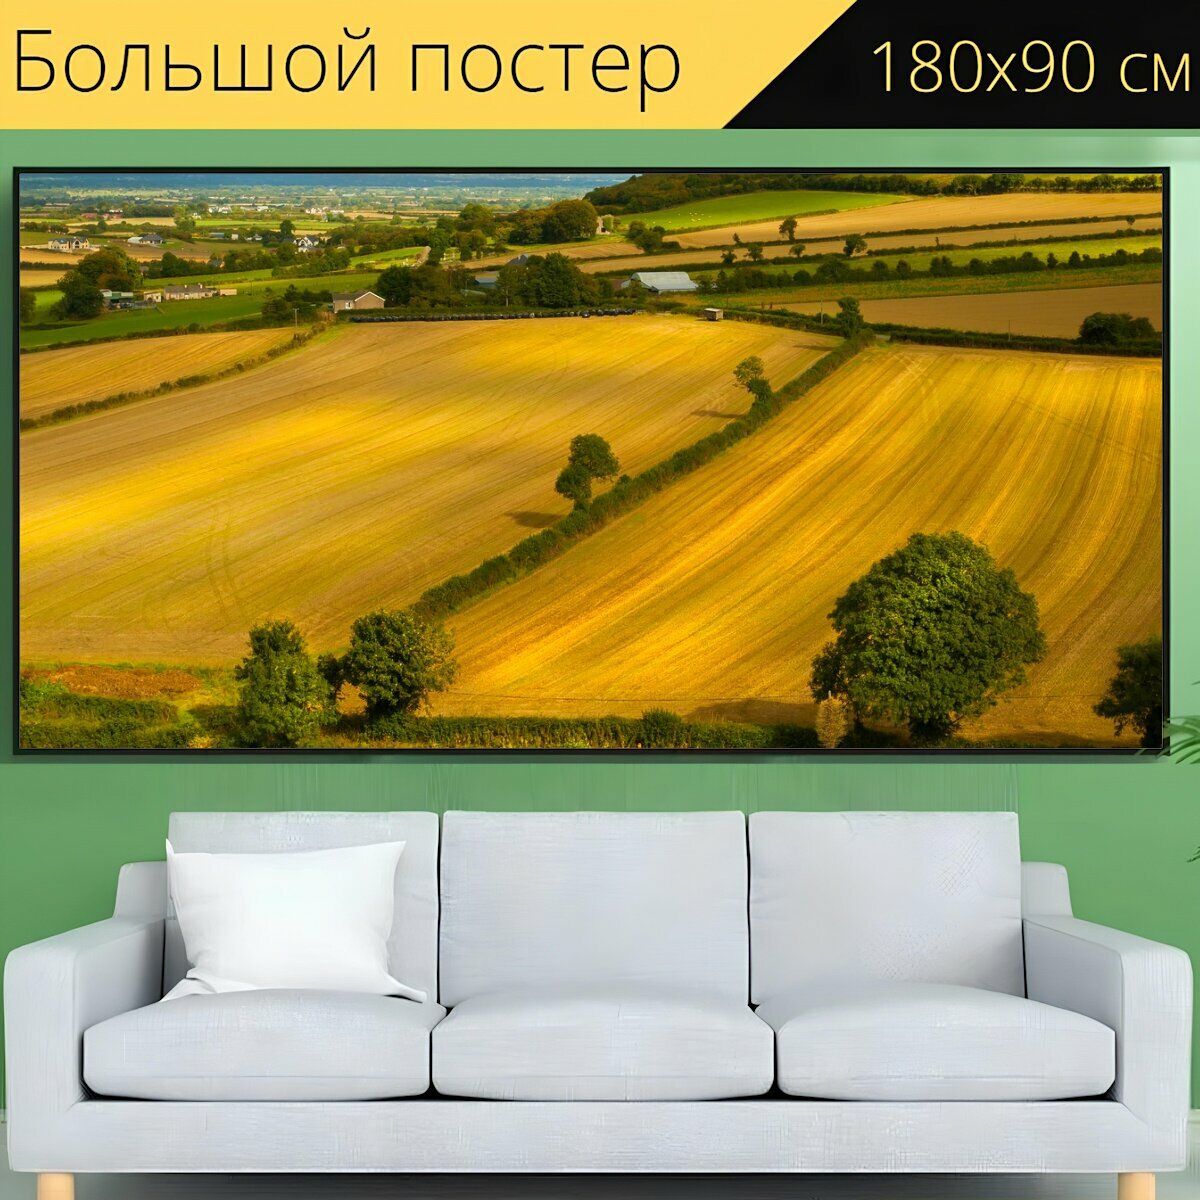 Большой постер "Пейзаж, поля, сельское хозяйство" 180 x 90 см. для интерьера